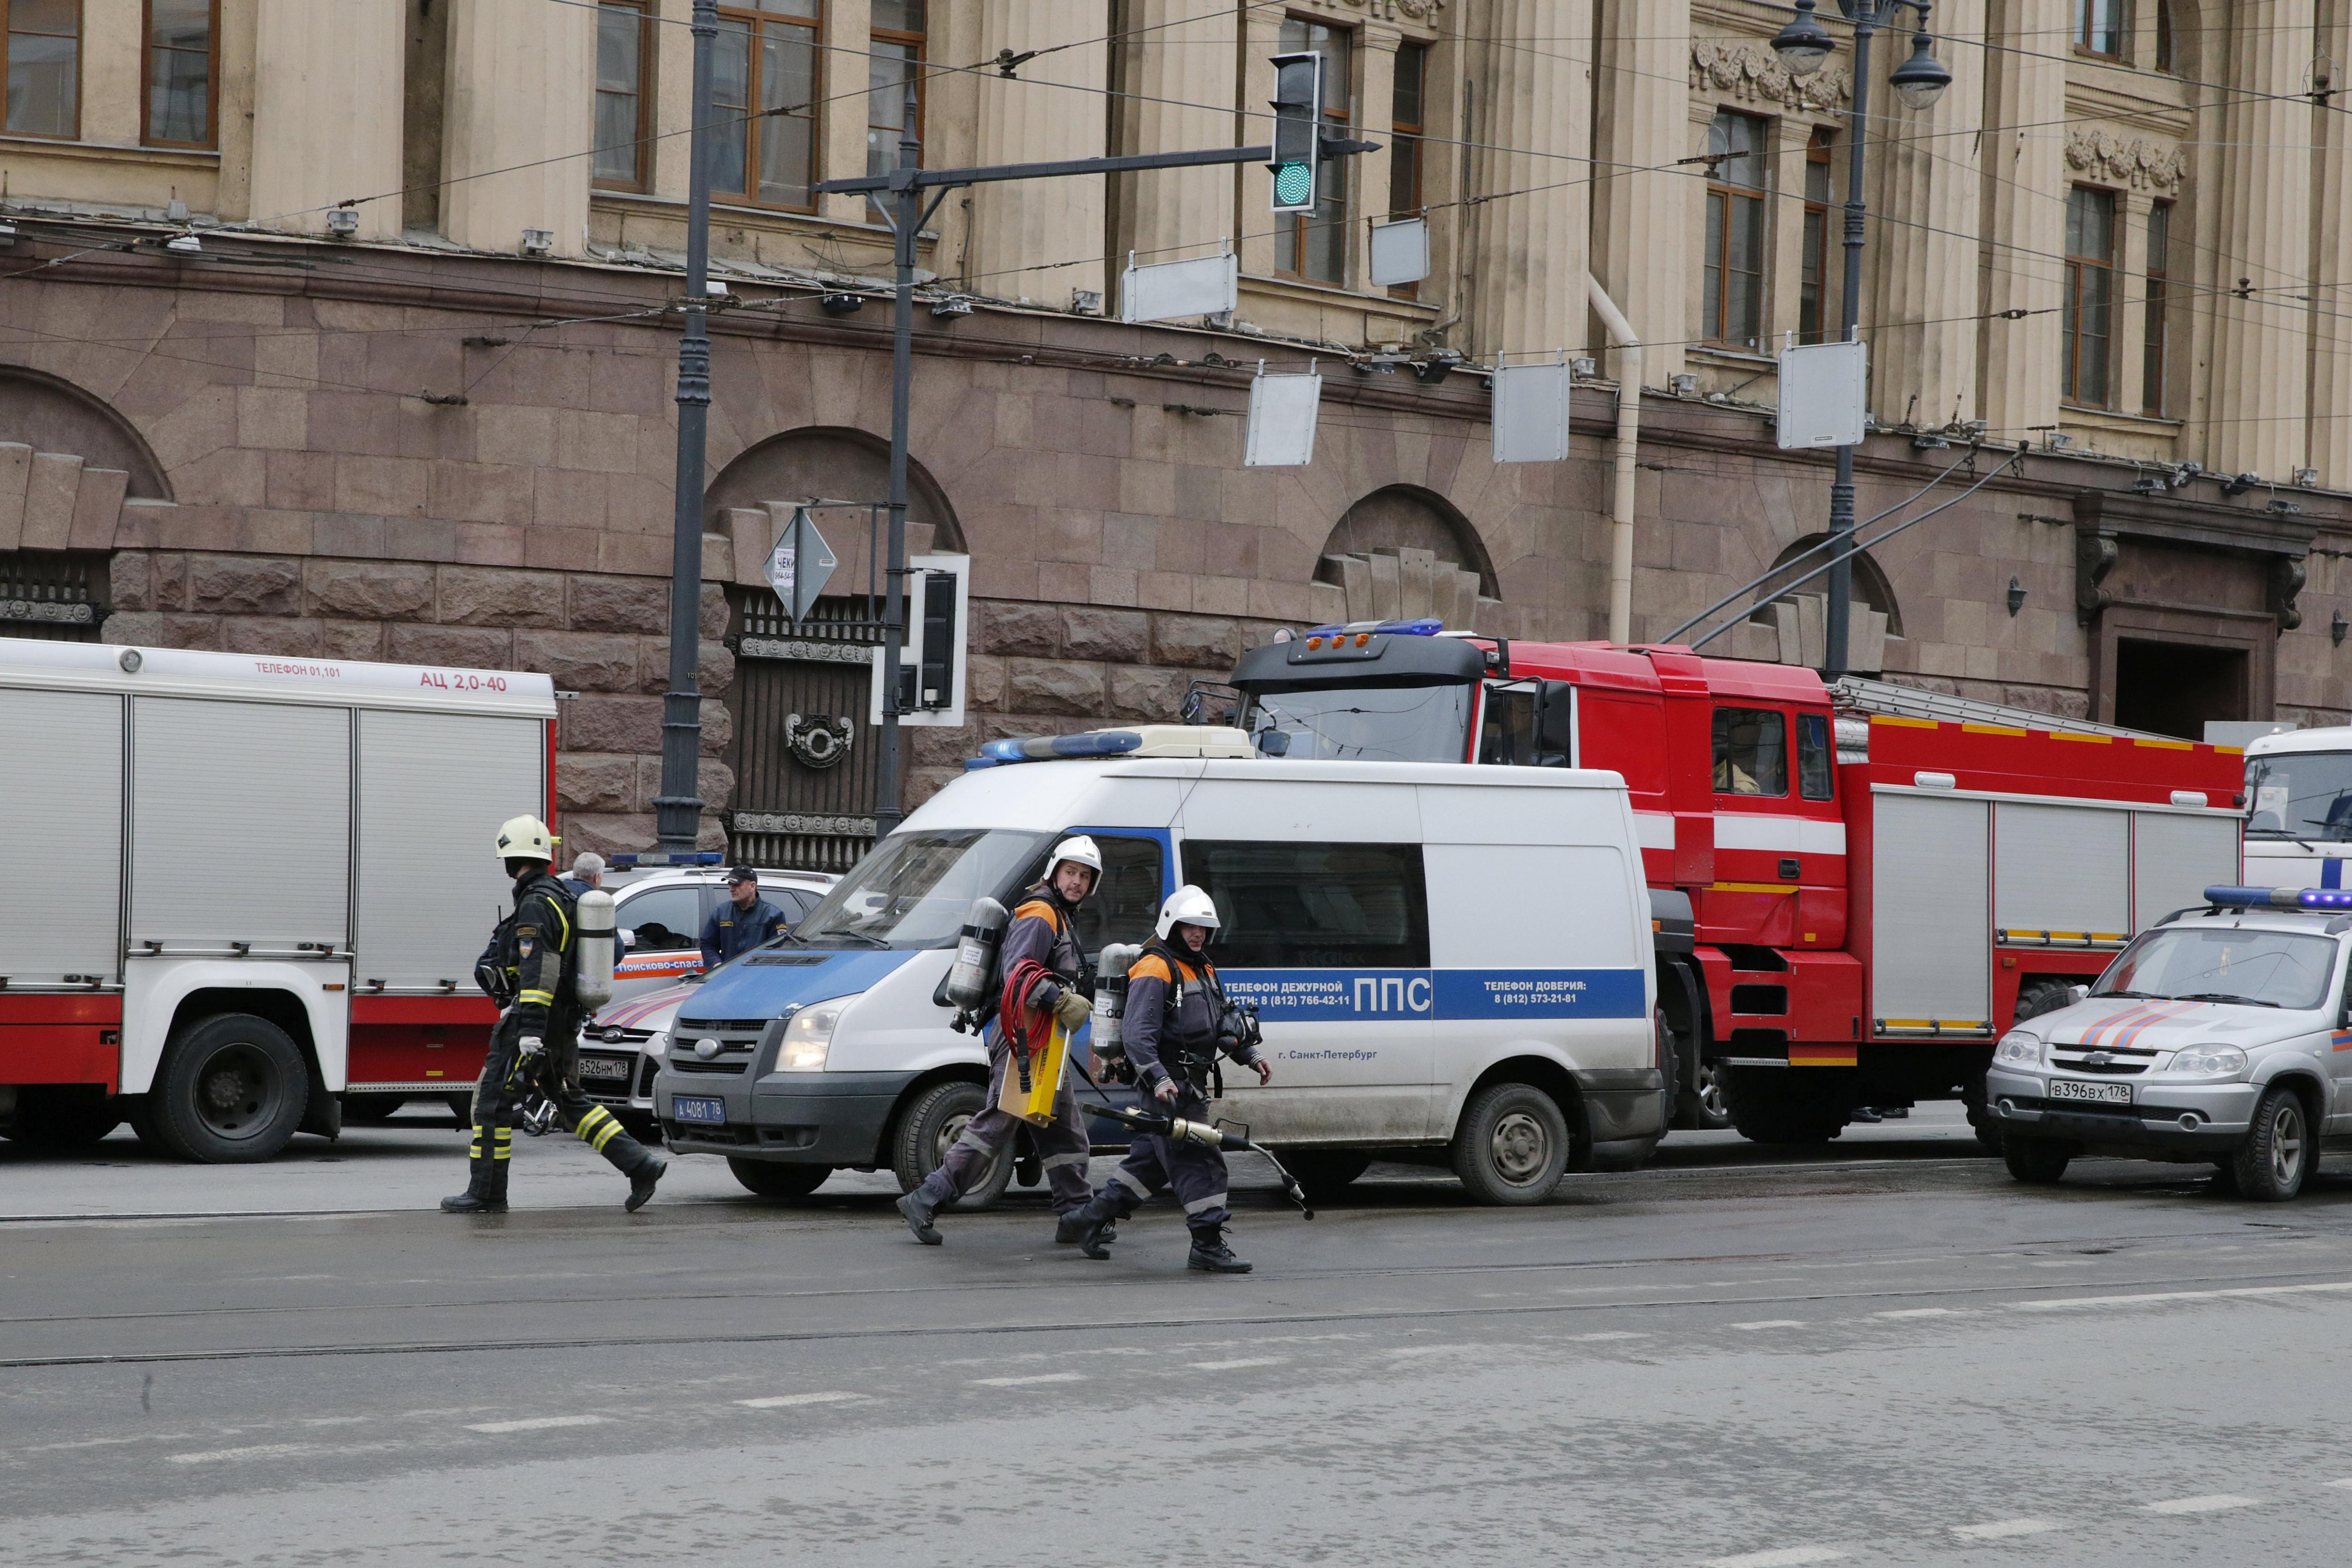 Desactiven una altra bomba en un edifici de Sant Petersburg